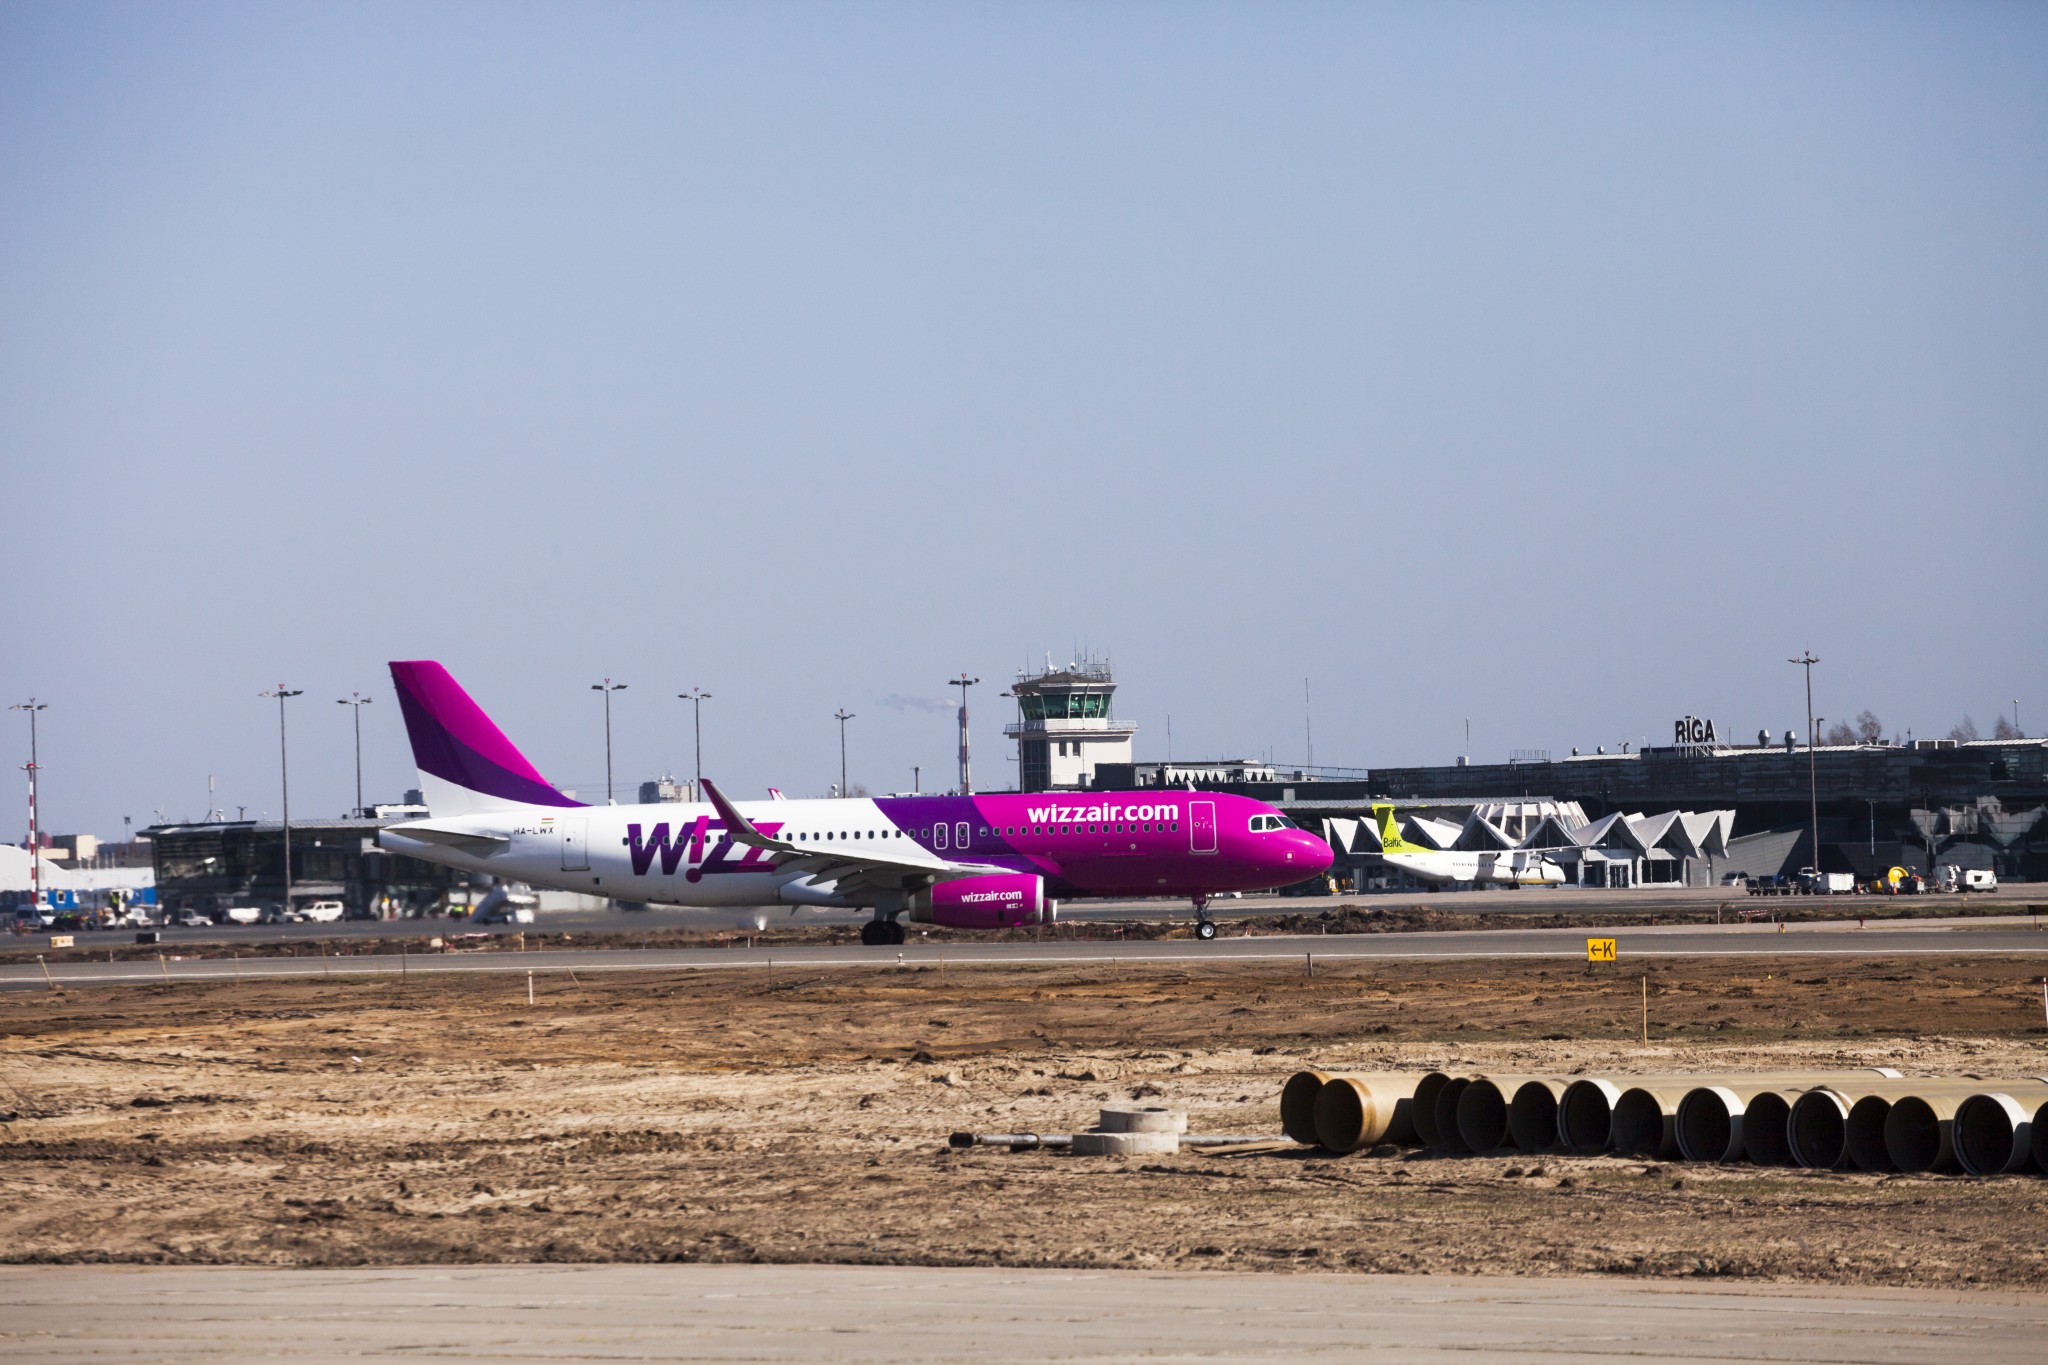 Wizz Air posts April 2021 traffic and emissions statistics